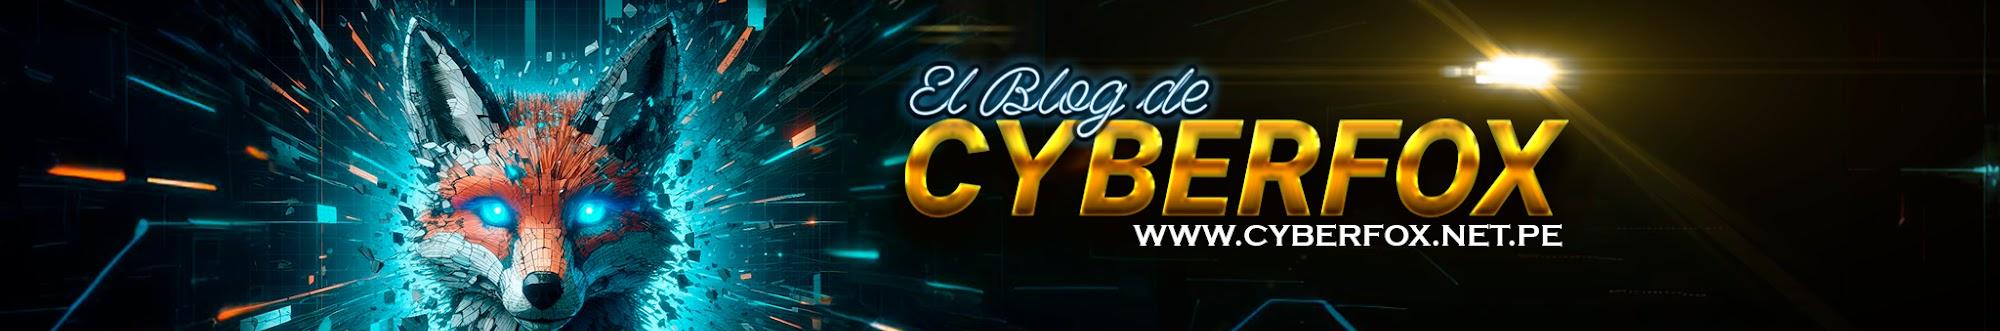 El Blog de CyberFox